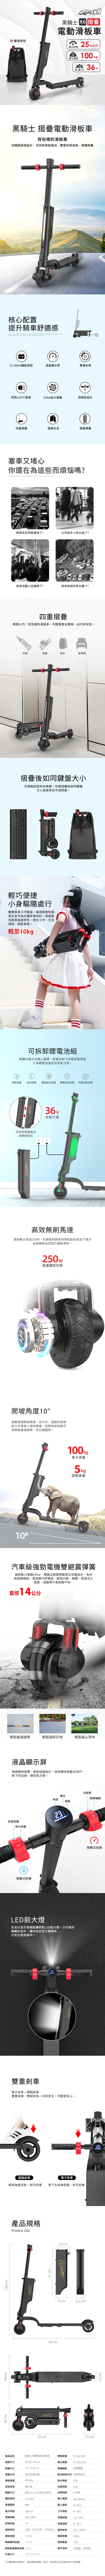 【i-smart】黑騎士摺疊攜帶電動滑板車-黑X6R36GL